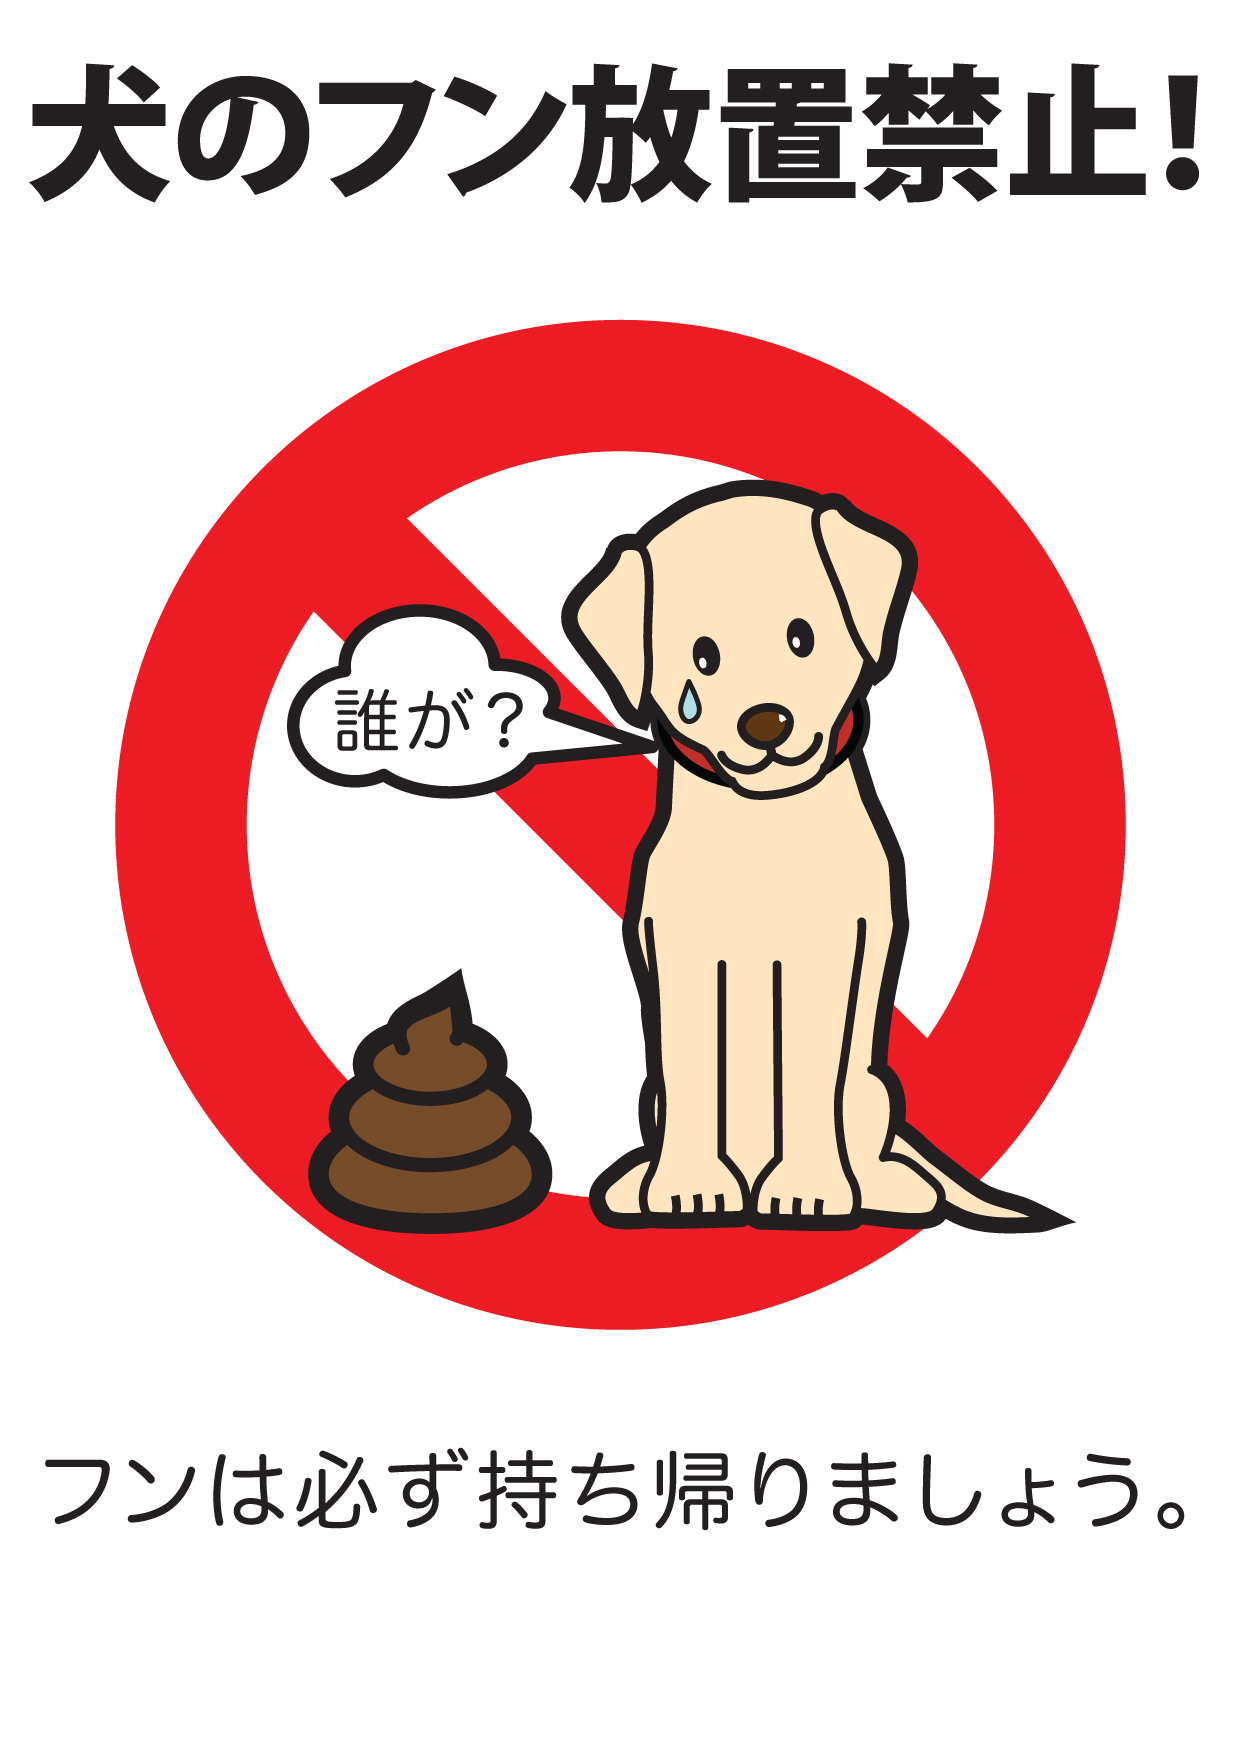 犬のフン放置禁止 無料ポスター ヒトblog Naoeの日記